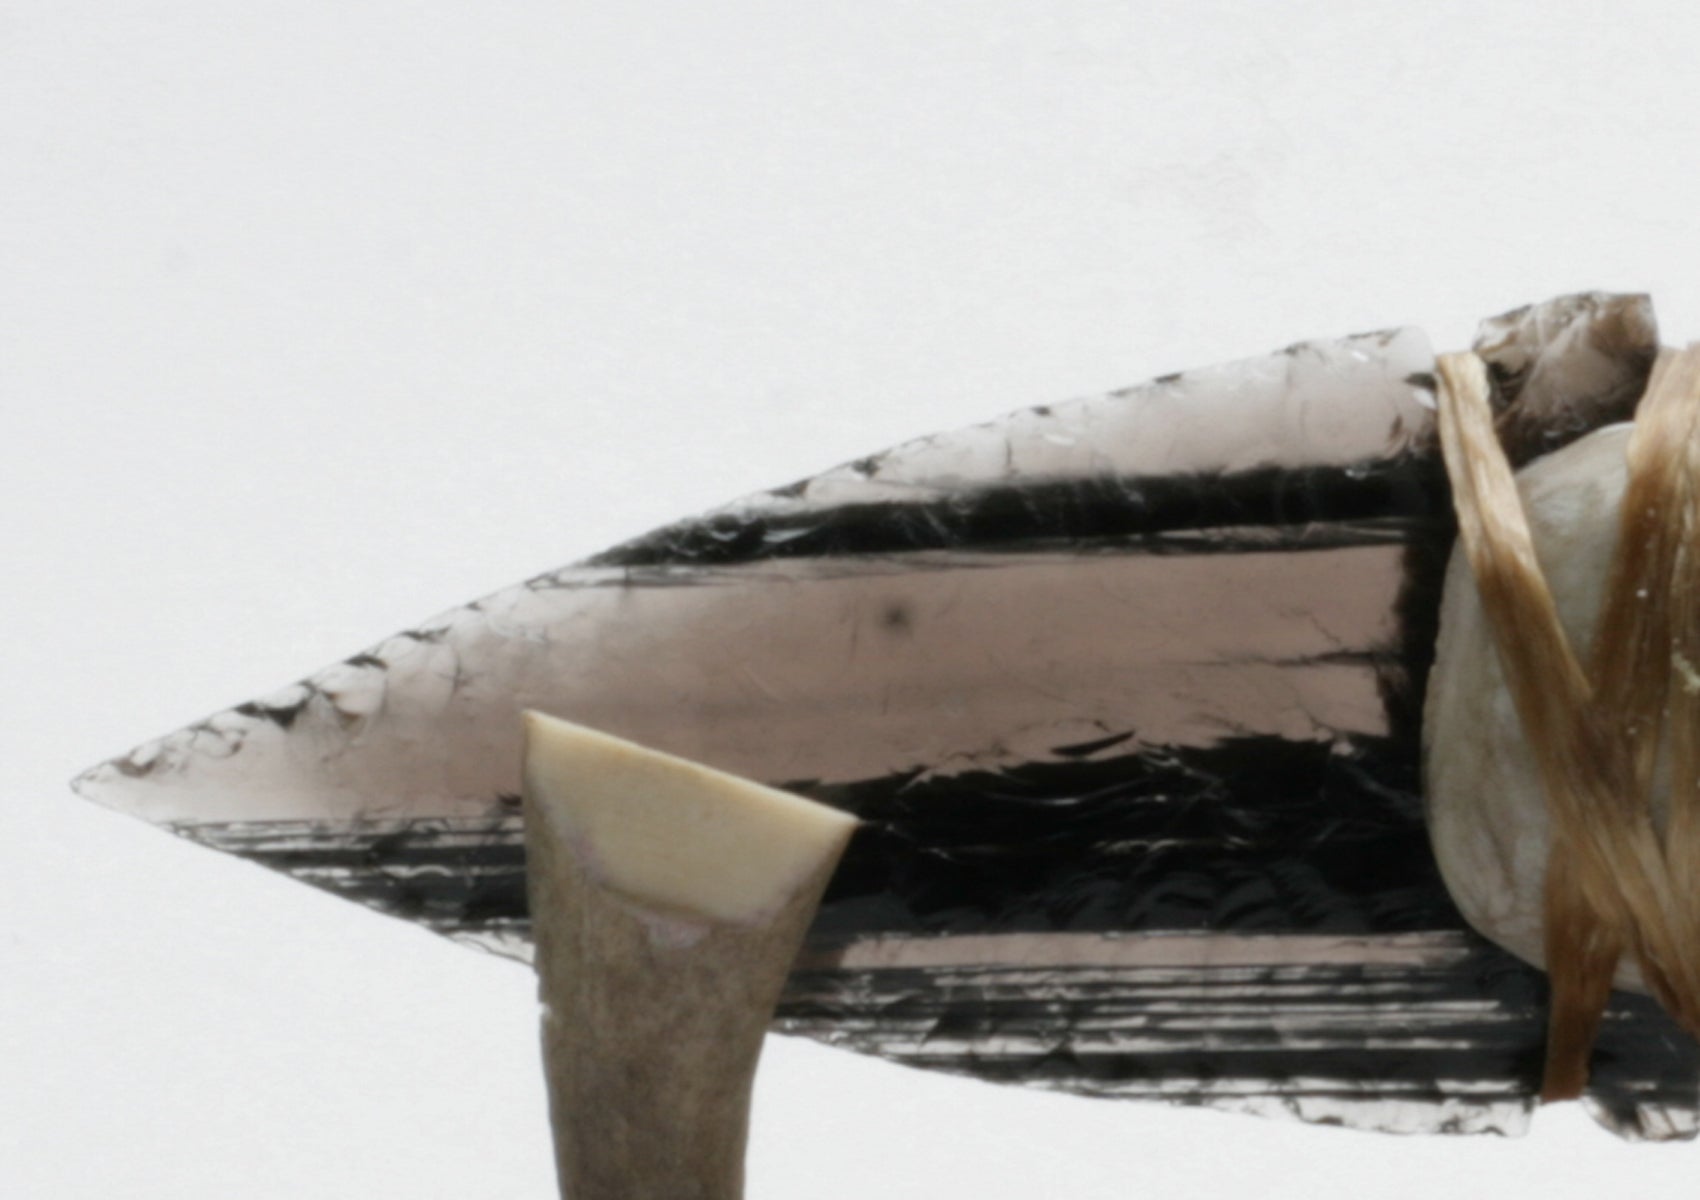 Black & Transparent Obsidian Knife with Deer Antler Handle